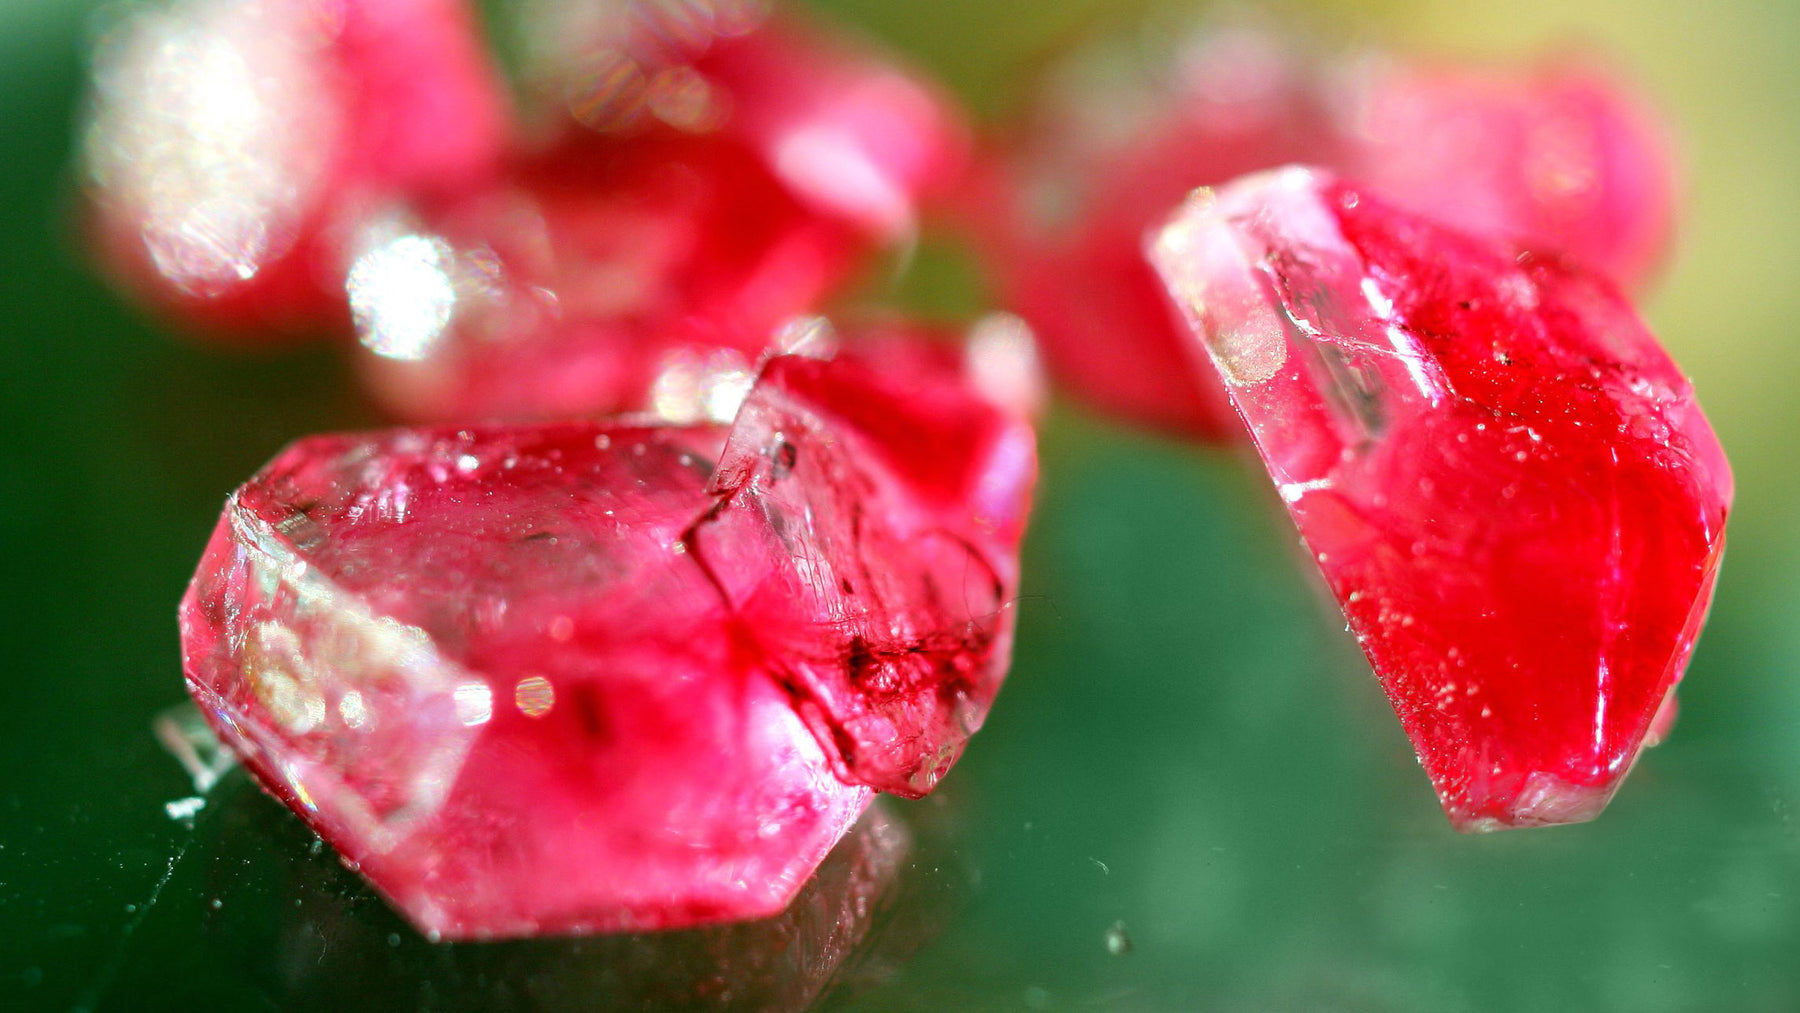 Corundum ruby crystal gemstone metaphysical healing properties meaning